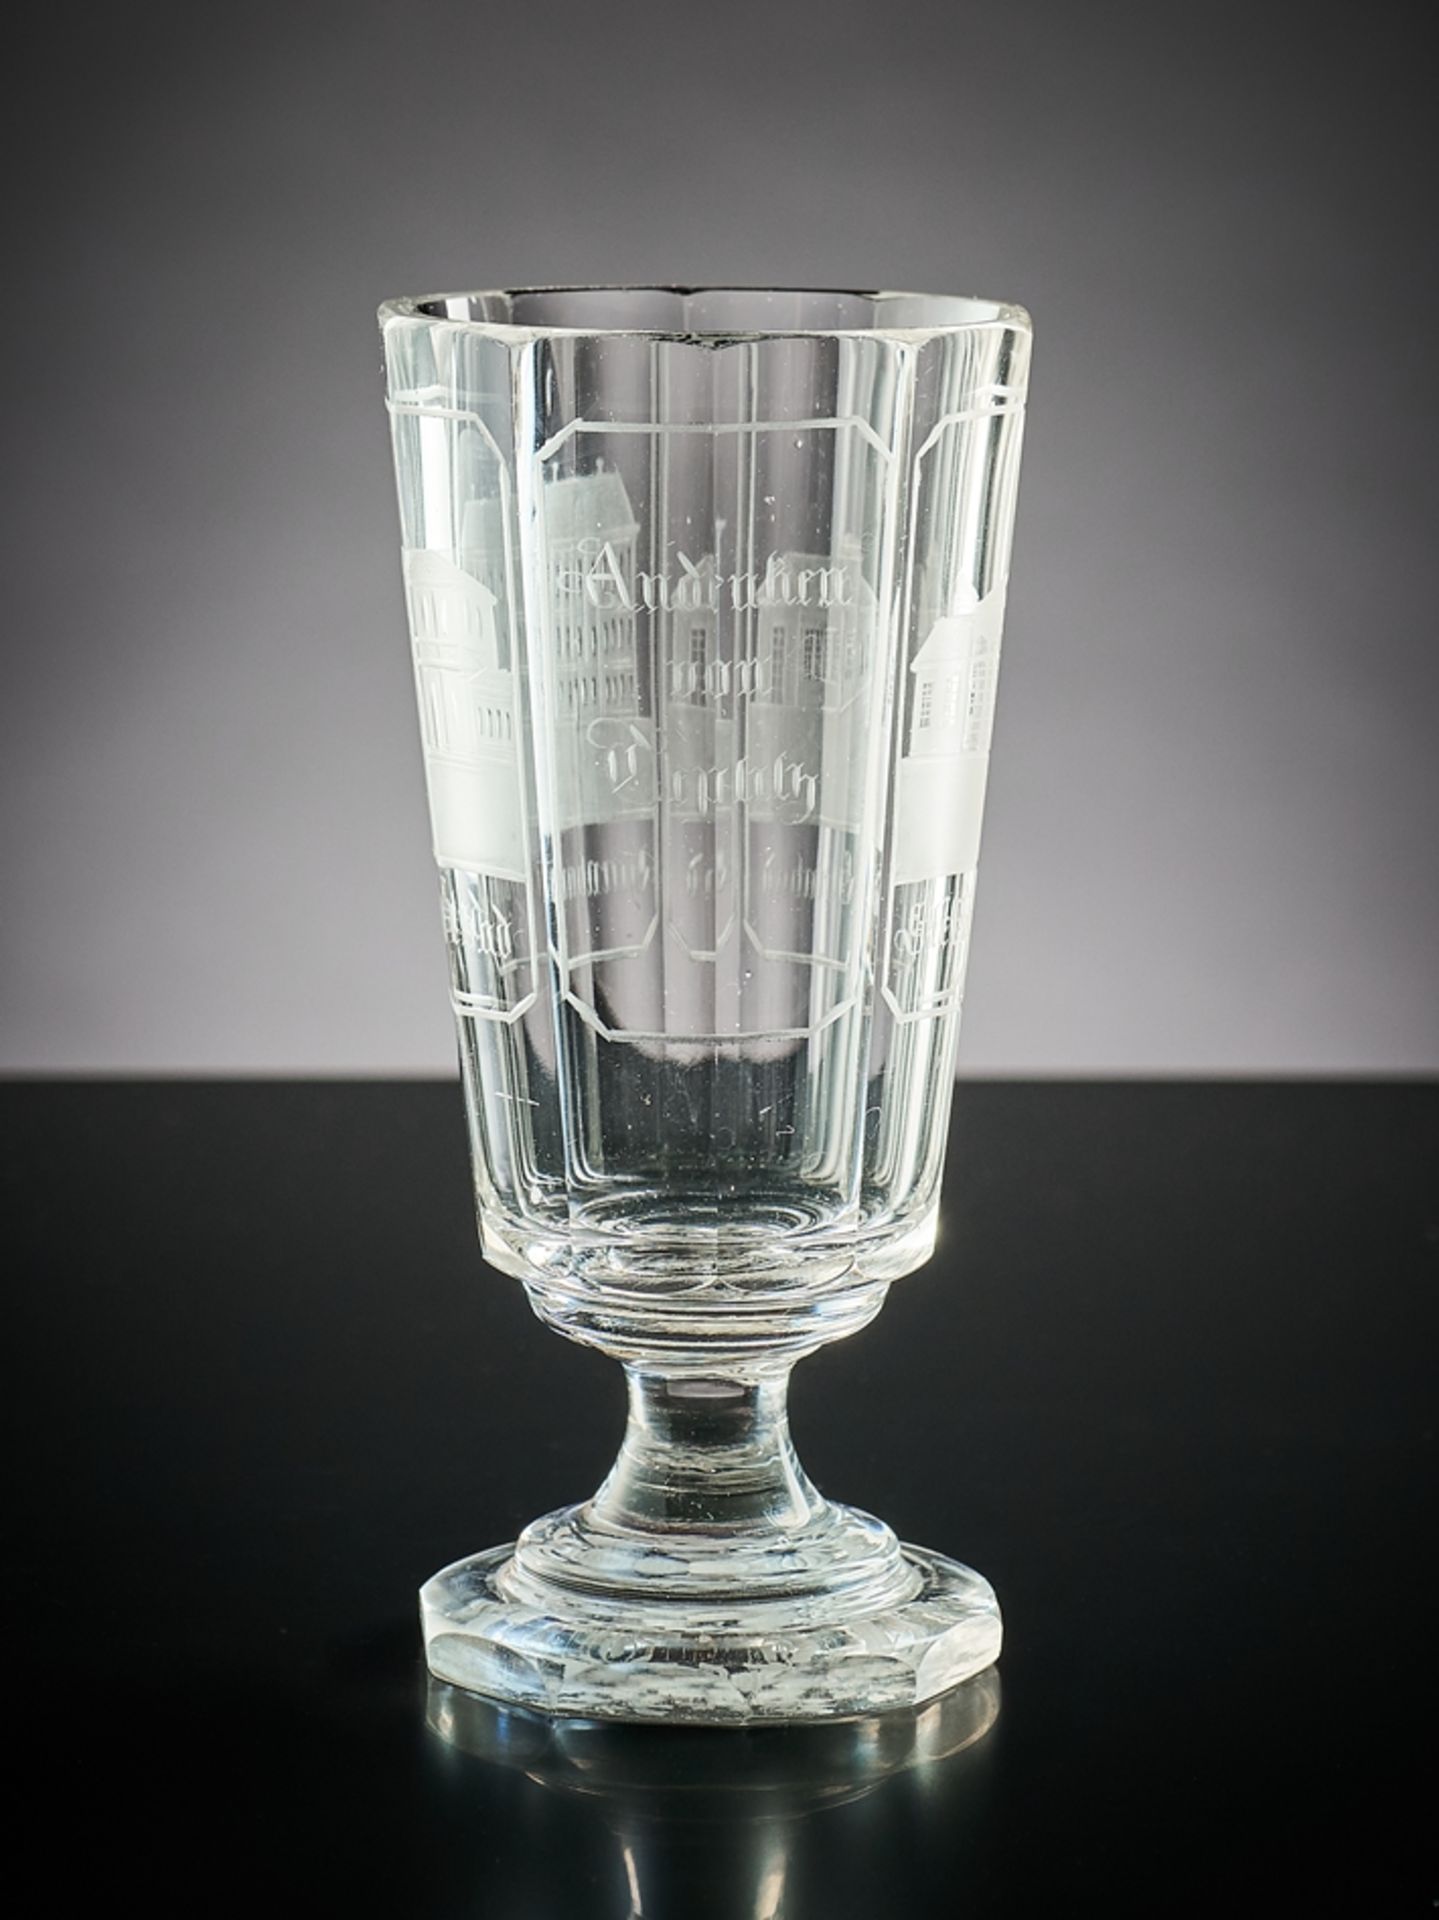 Teplitzer Badeglas. Farbloses Glas mit verschiedenen Ansichten von Teplitz. Böhmen, 19. Jh. H 14,5